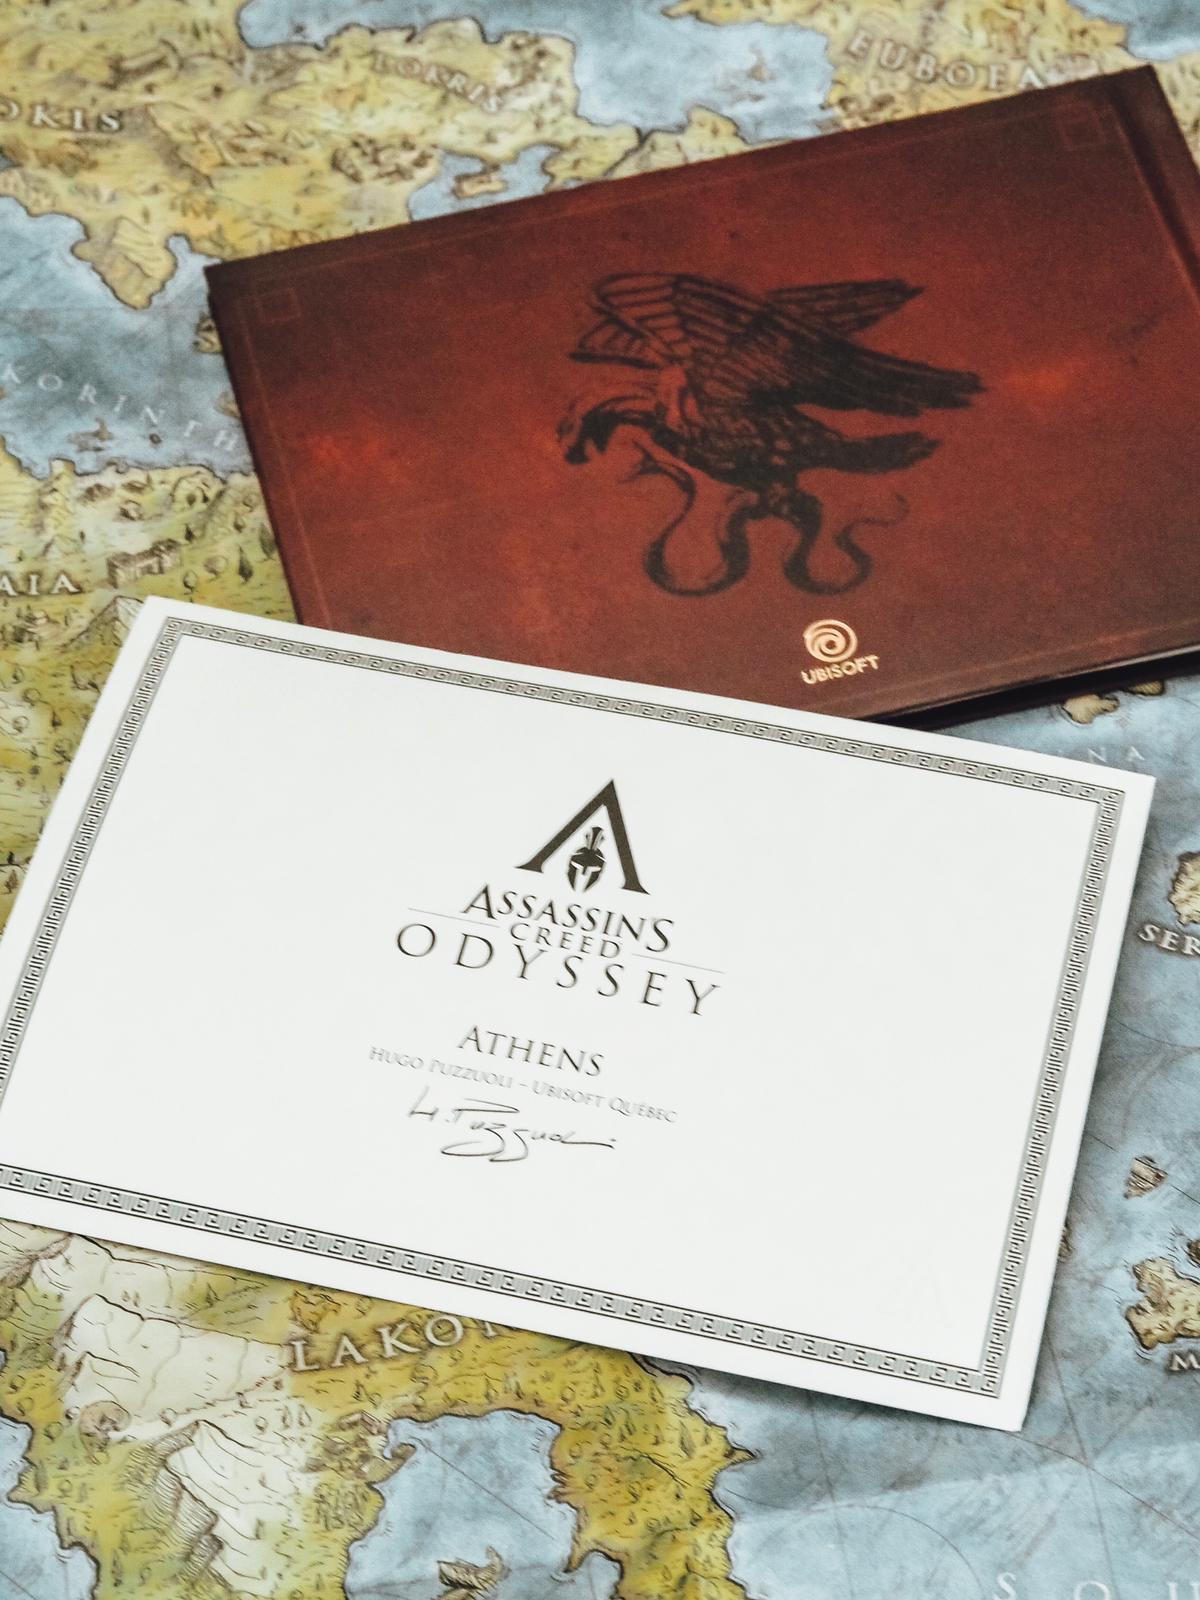 Heute gibt es ein top Unboxing der stylischen Assasins Creed Odyssey Pantheon Collectors Edition von Ubisoft Store und Ubicollectibles auf dem Gamer Blog ☆ 